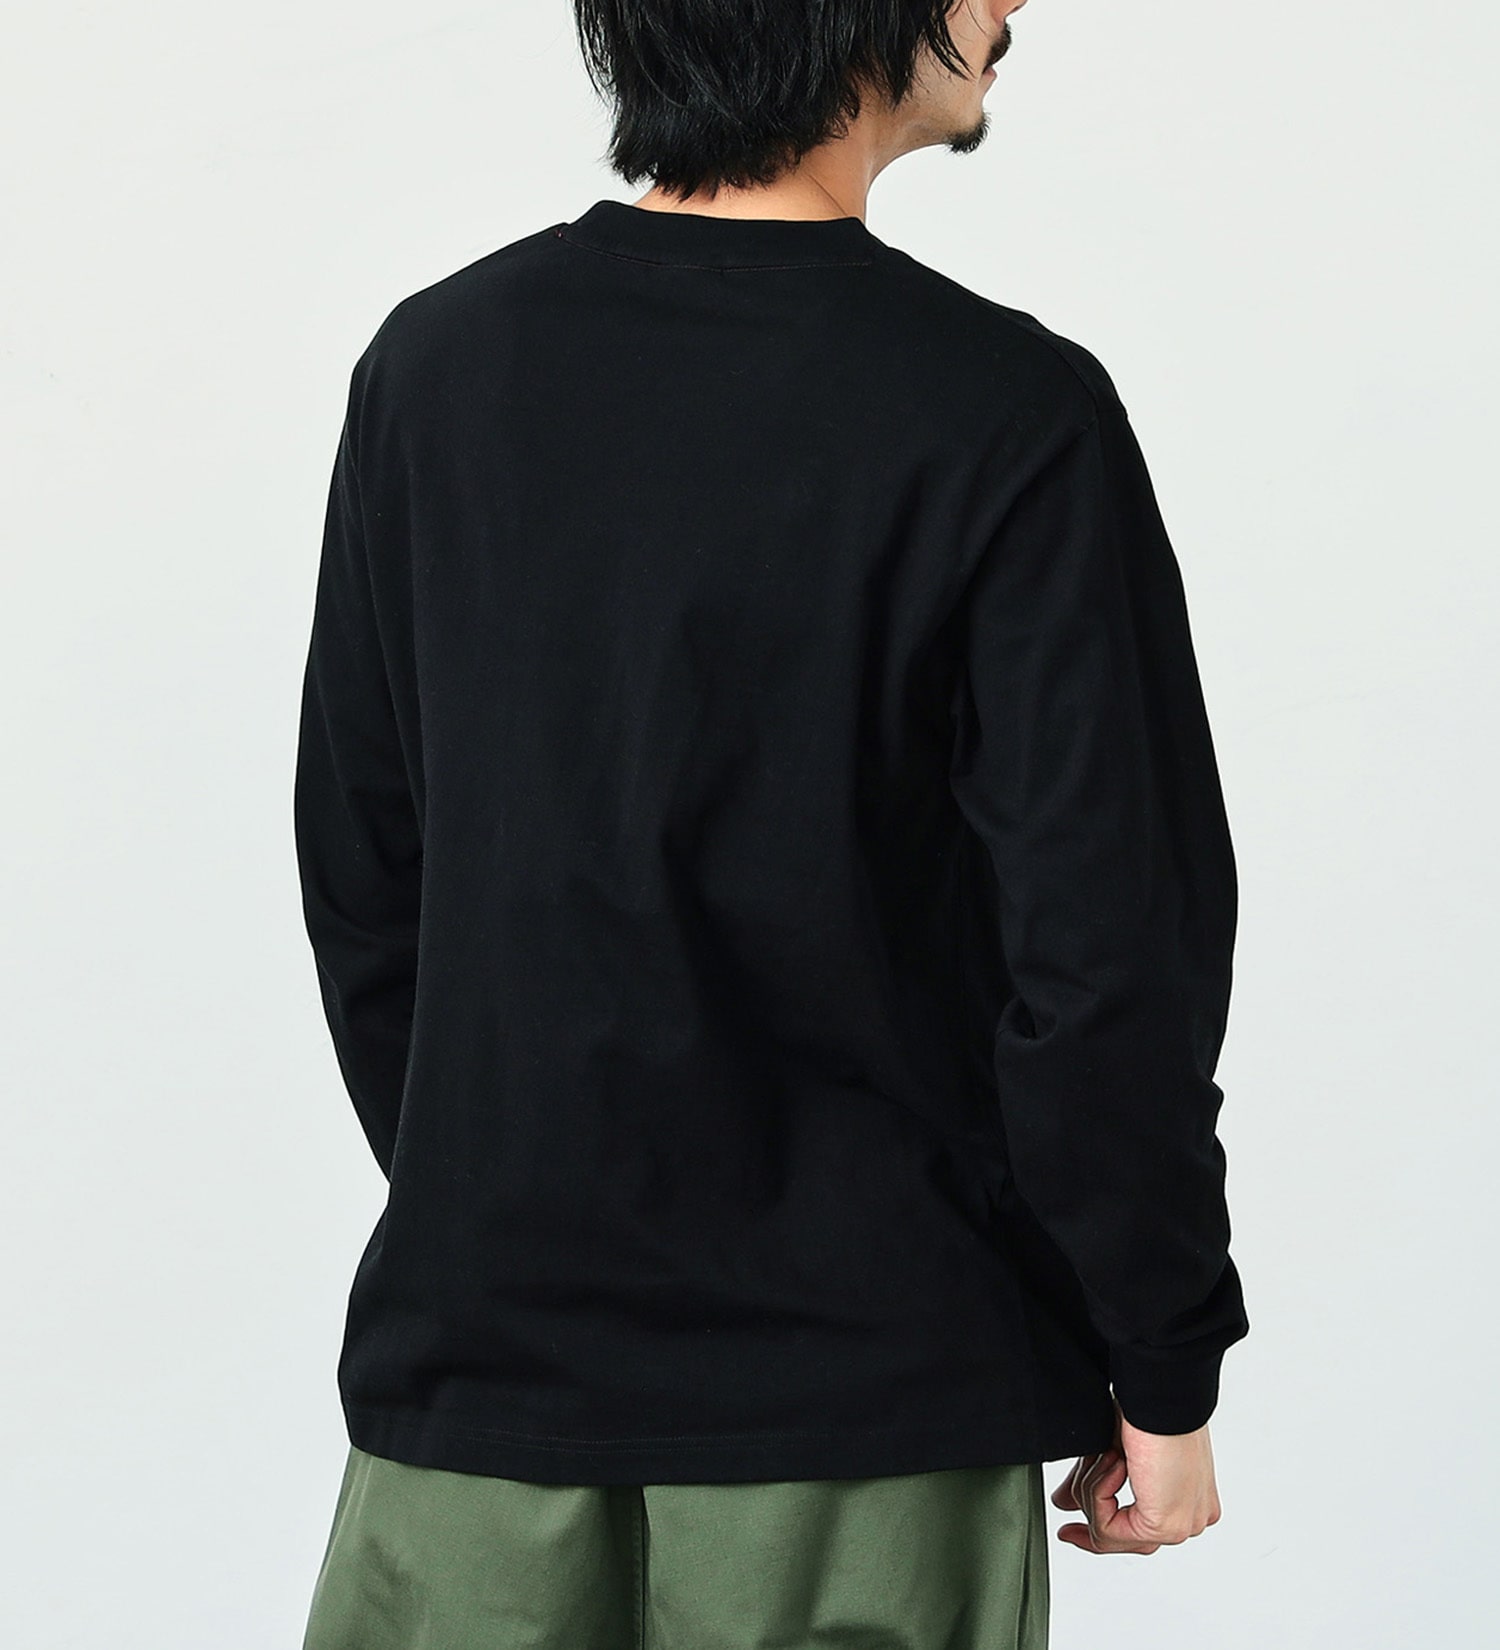 ALPHA(アルファ)のAマークプリント 長袖Tシャツ(カモ柄)|トップス/Tシャツ/カットソー/メンズ|ブラック